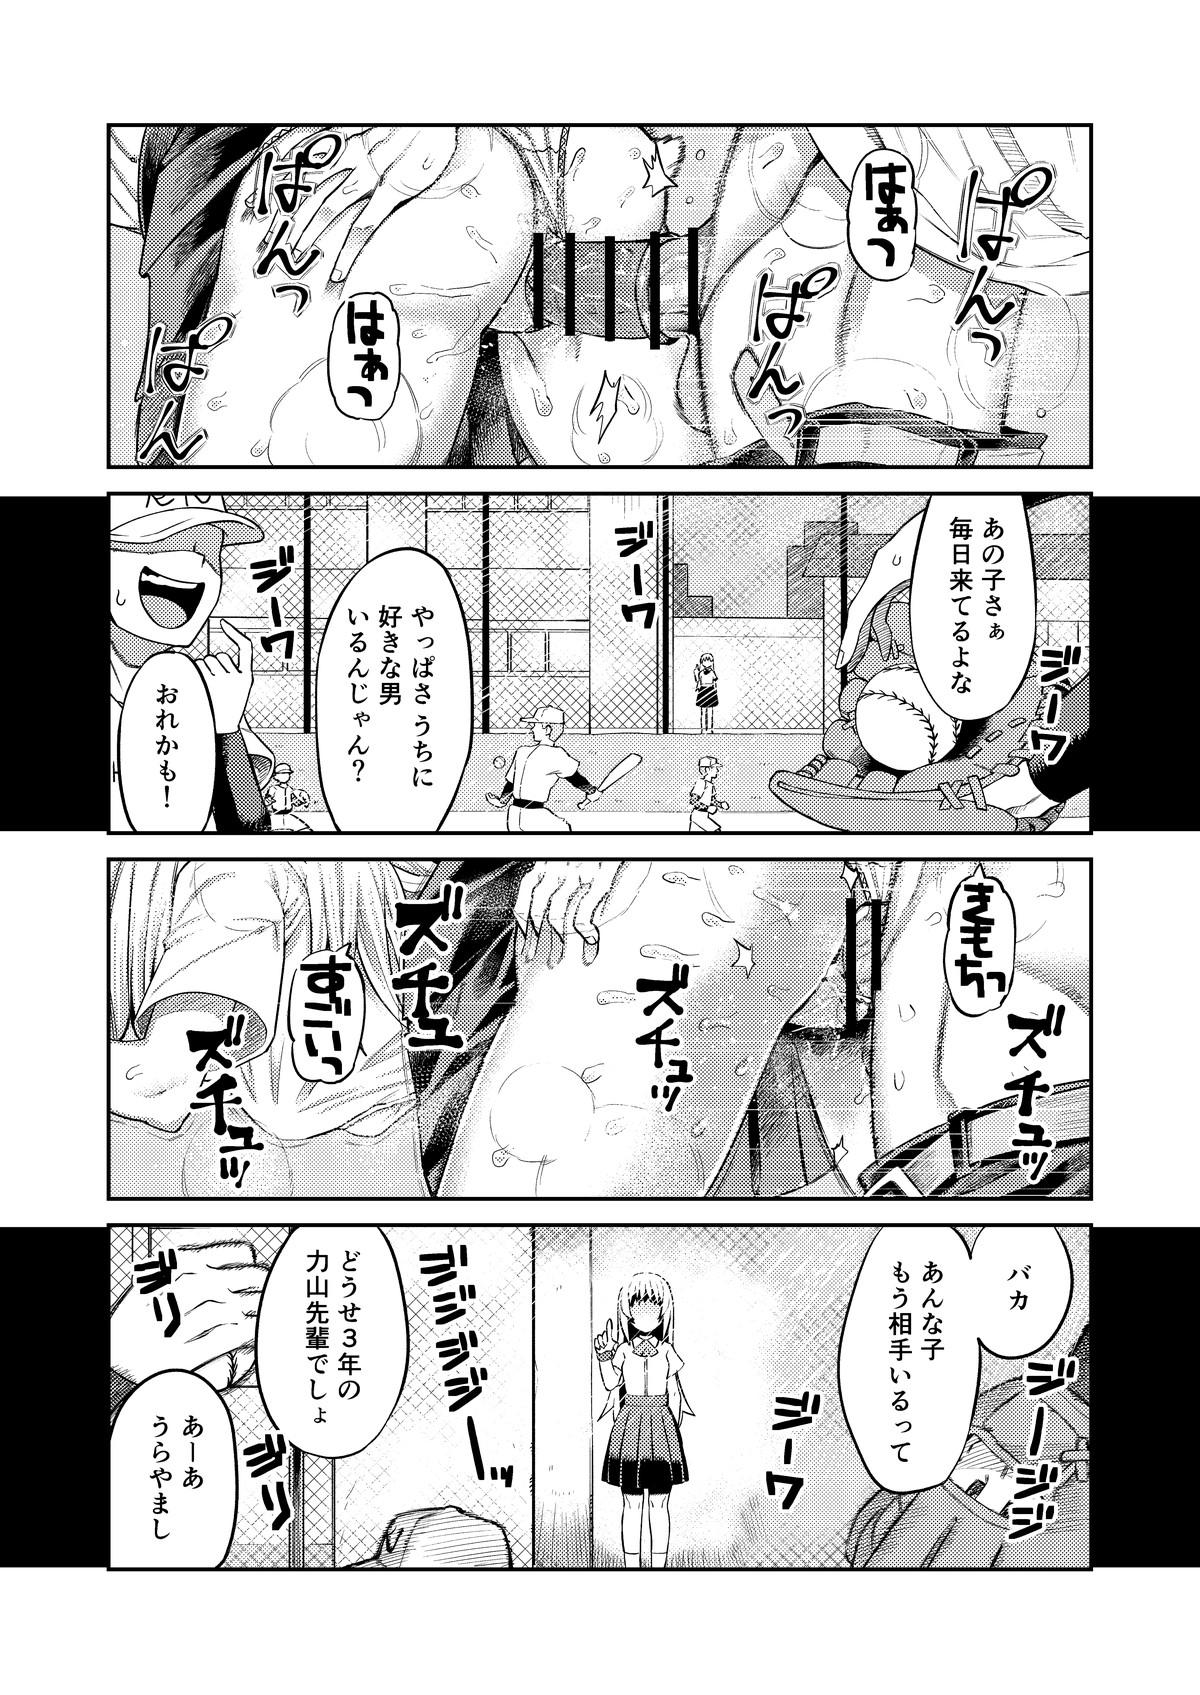 Best Riyū wa fumeidaga etchi shite kureru kōhai - Original Cuminmouth - Page 2